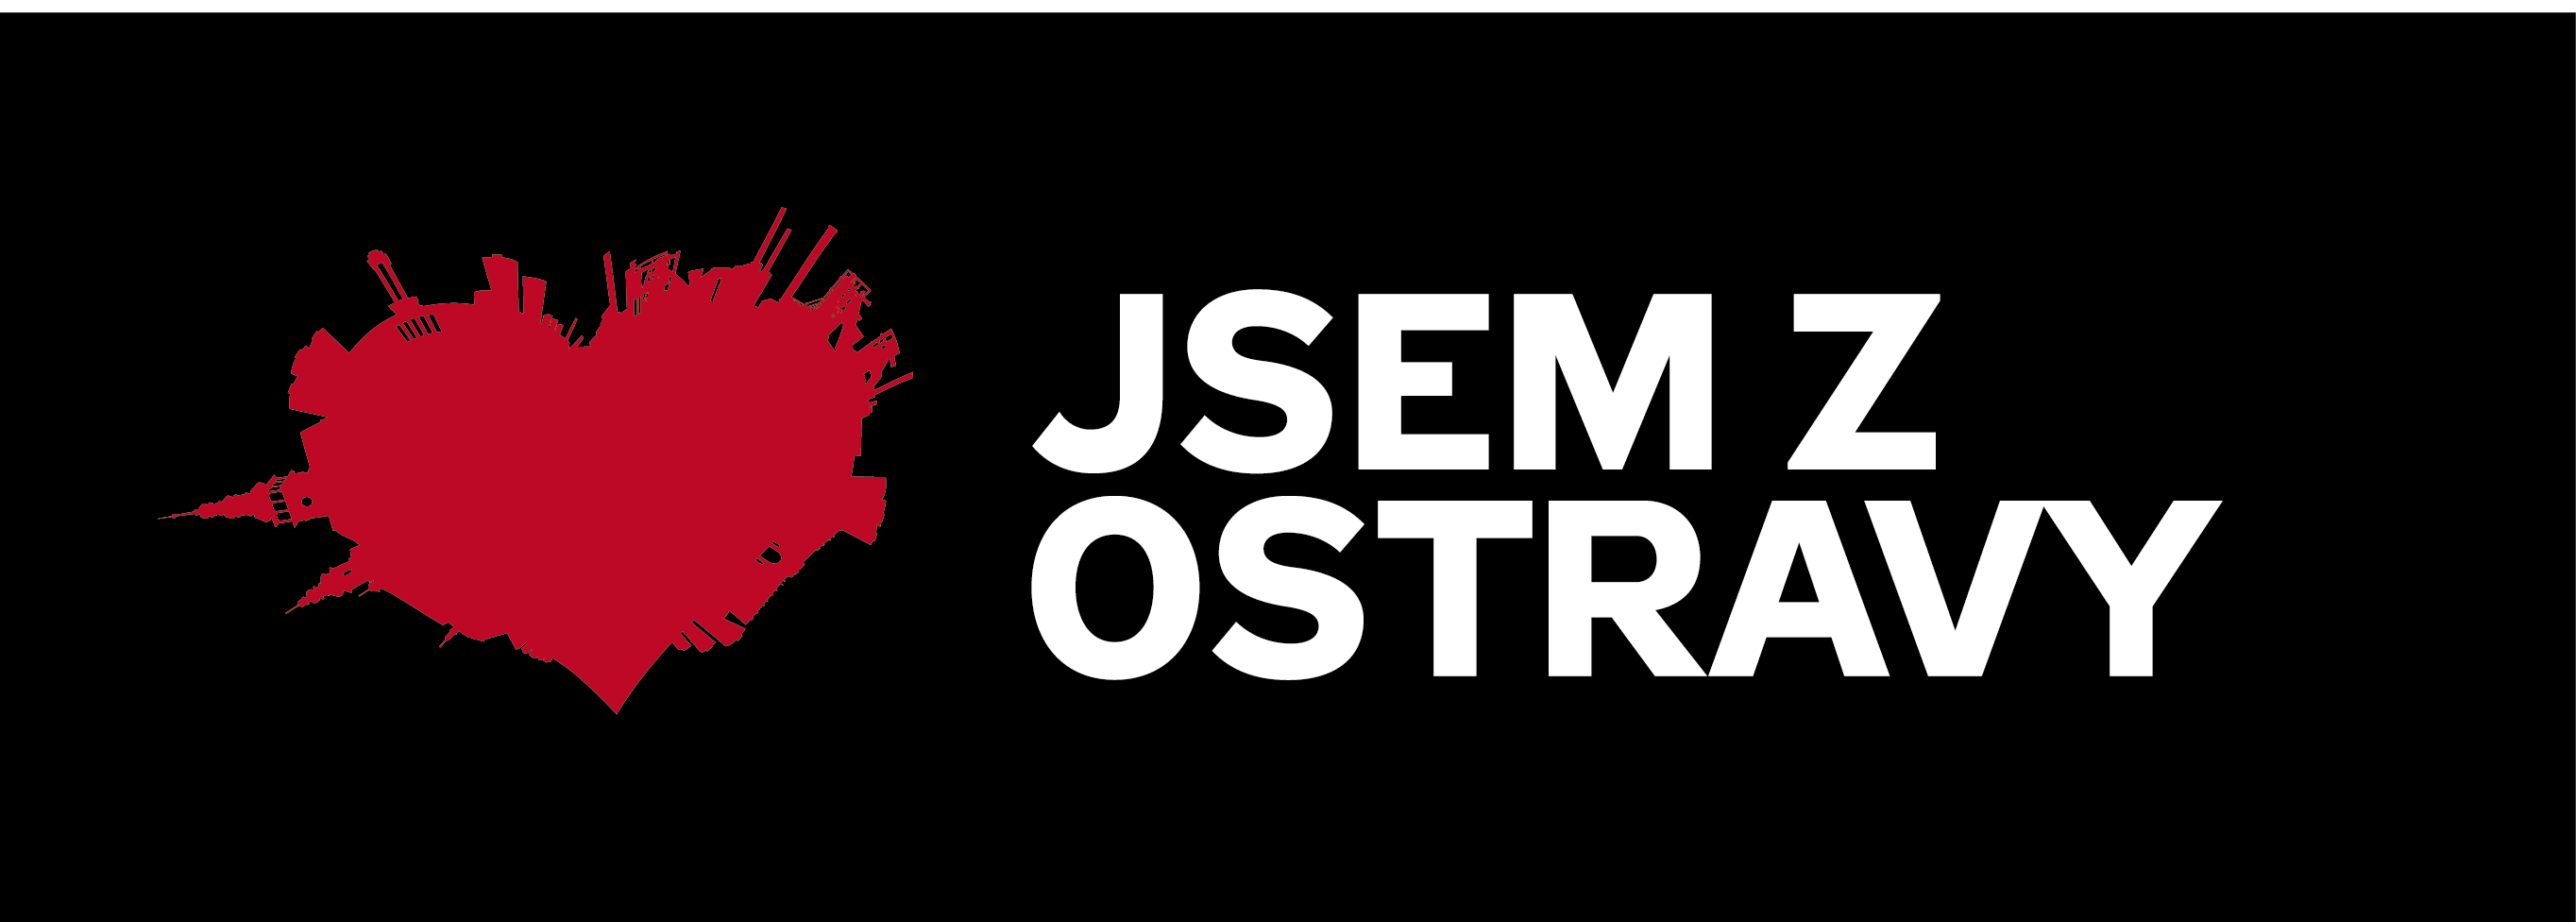 Náměstí Ostrava - Jih